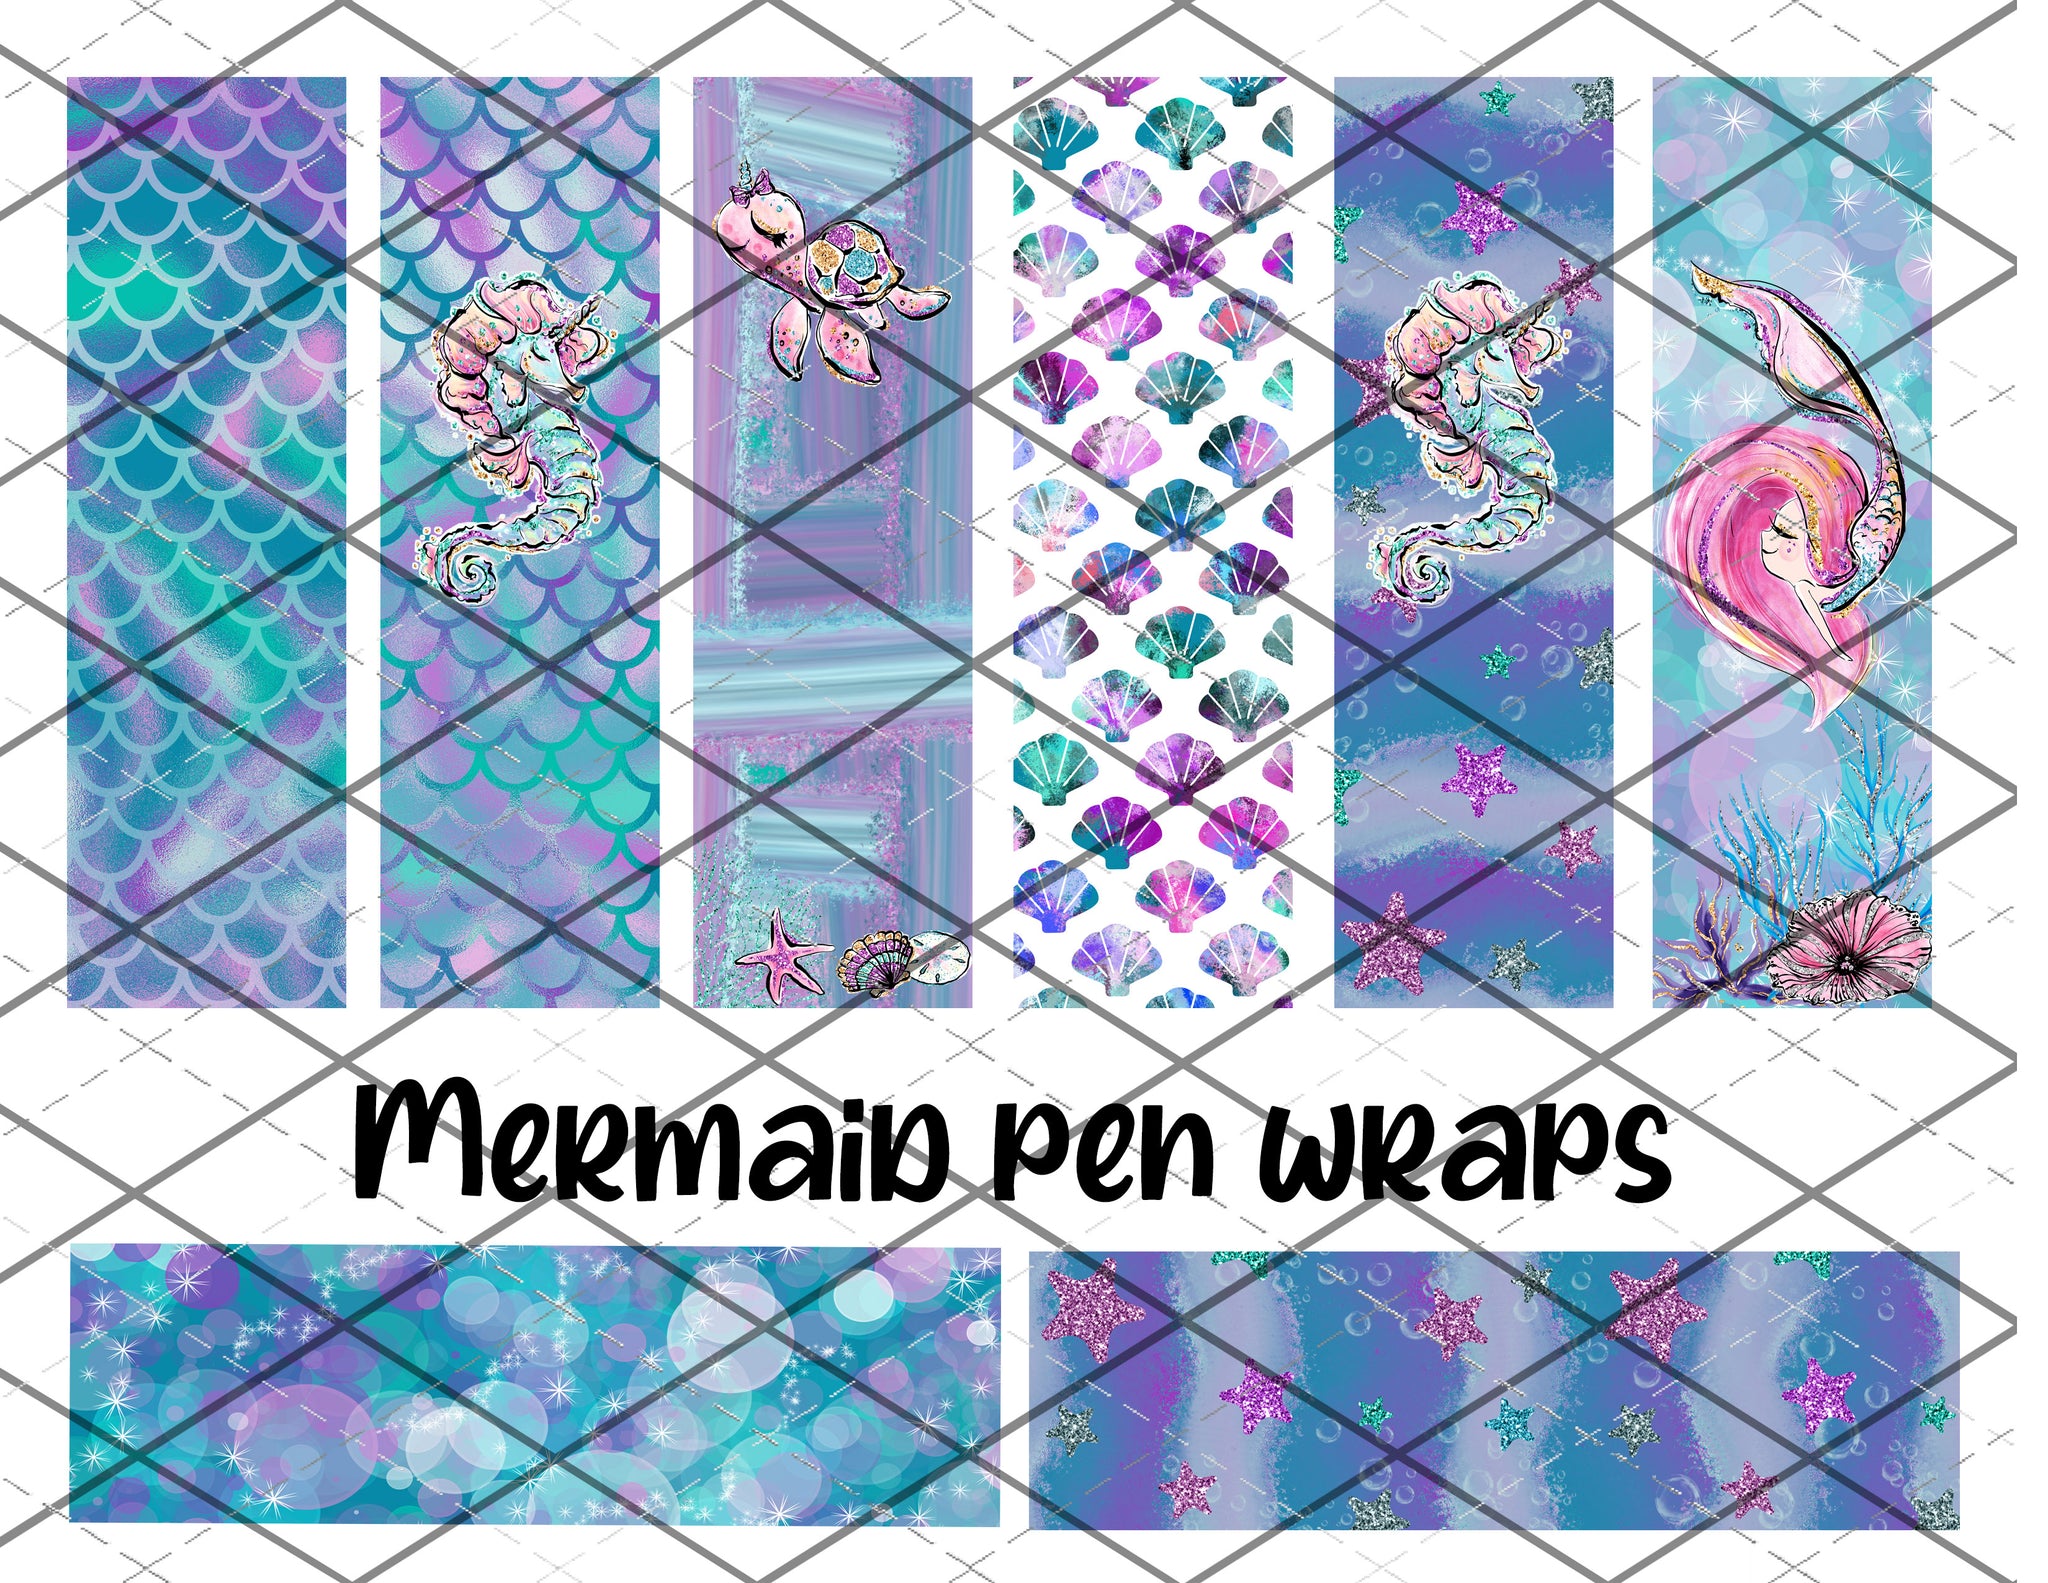 Mermaid pen wrap files - PNG Files